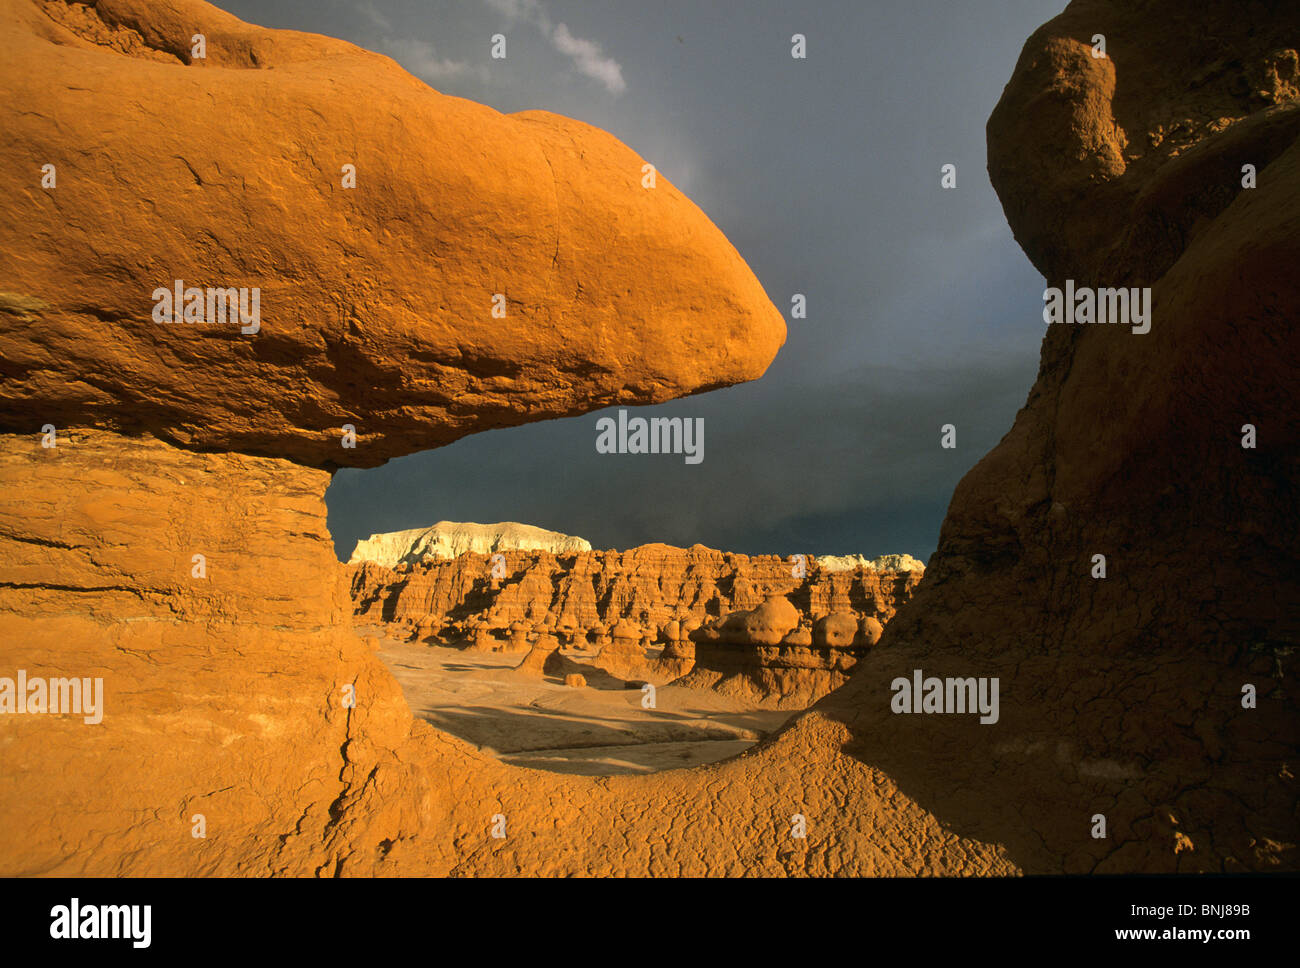 USA-Utah Sandstein Säulen mushroom Rock Goblins Kobolde abends leichte Dämmerung Gewitterwolken Goblin Valley North America United Stockfoto